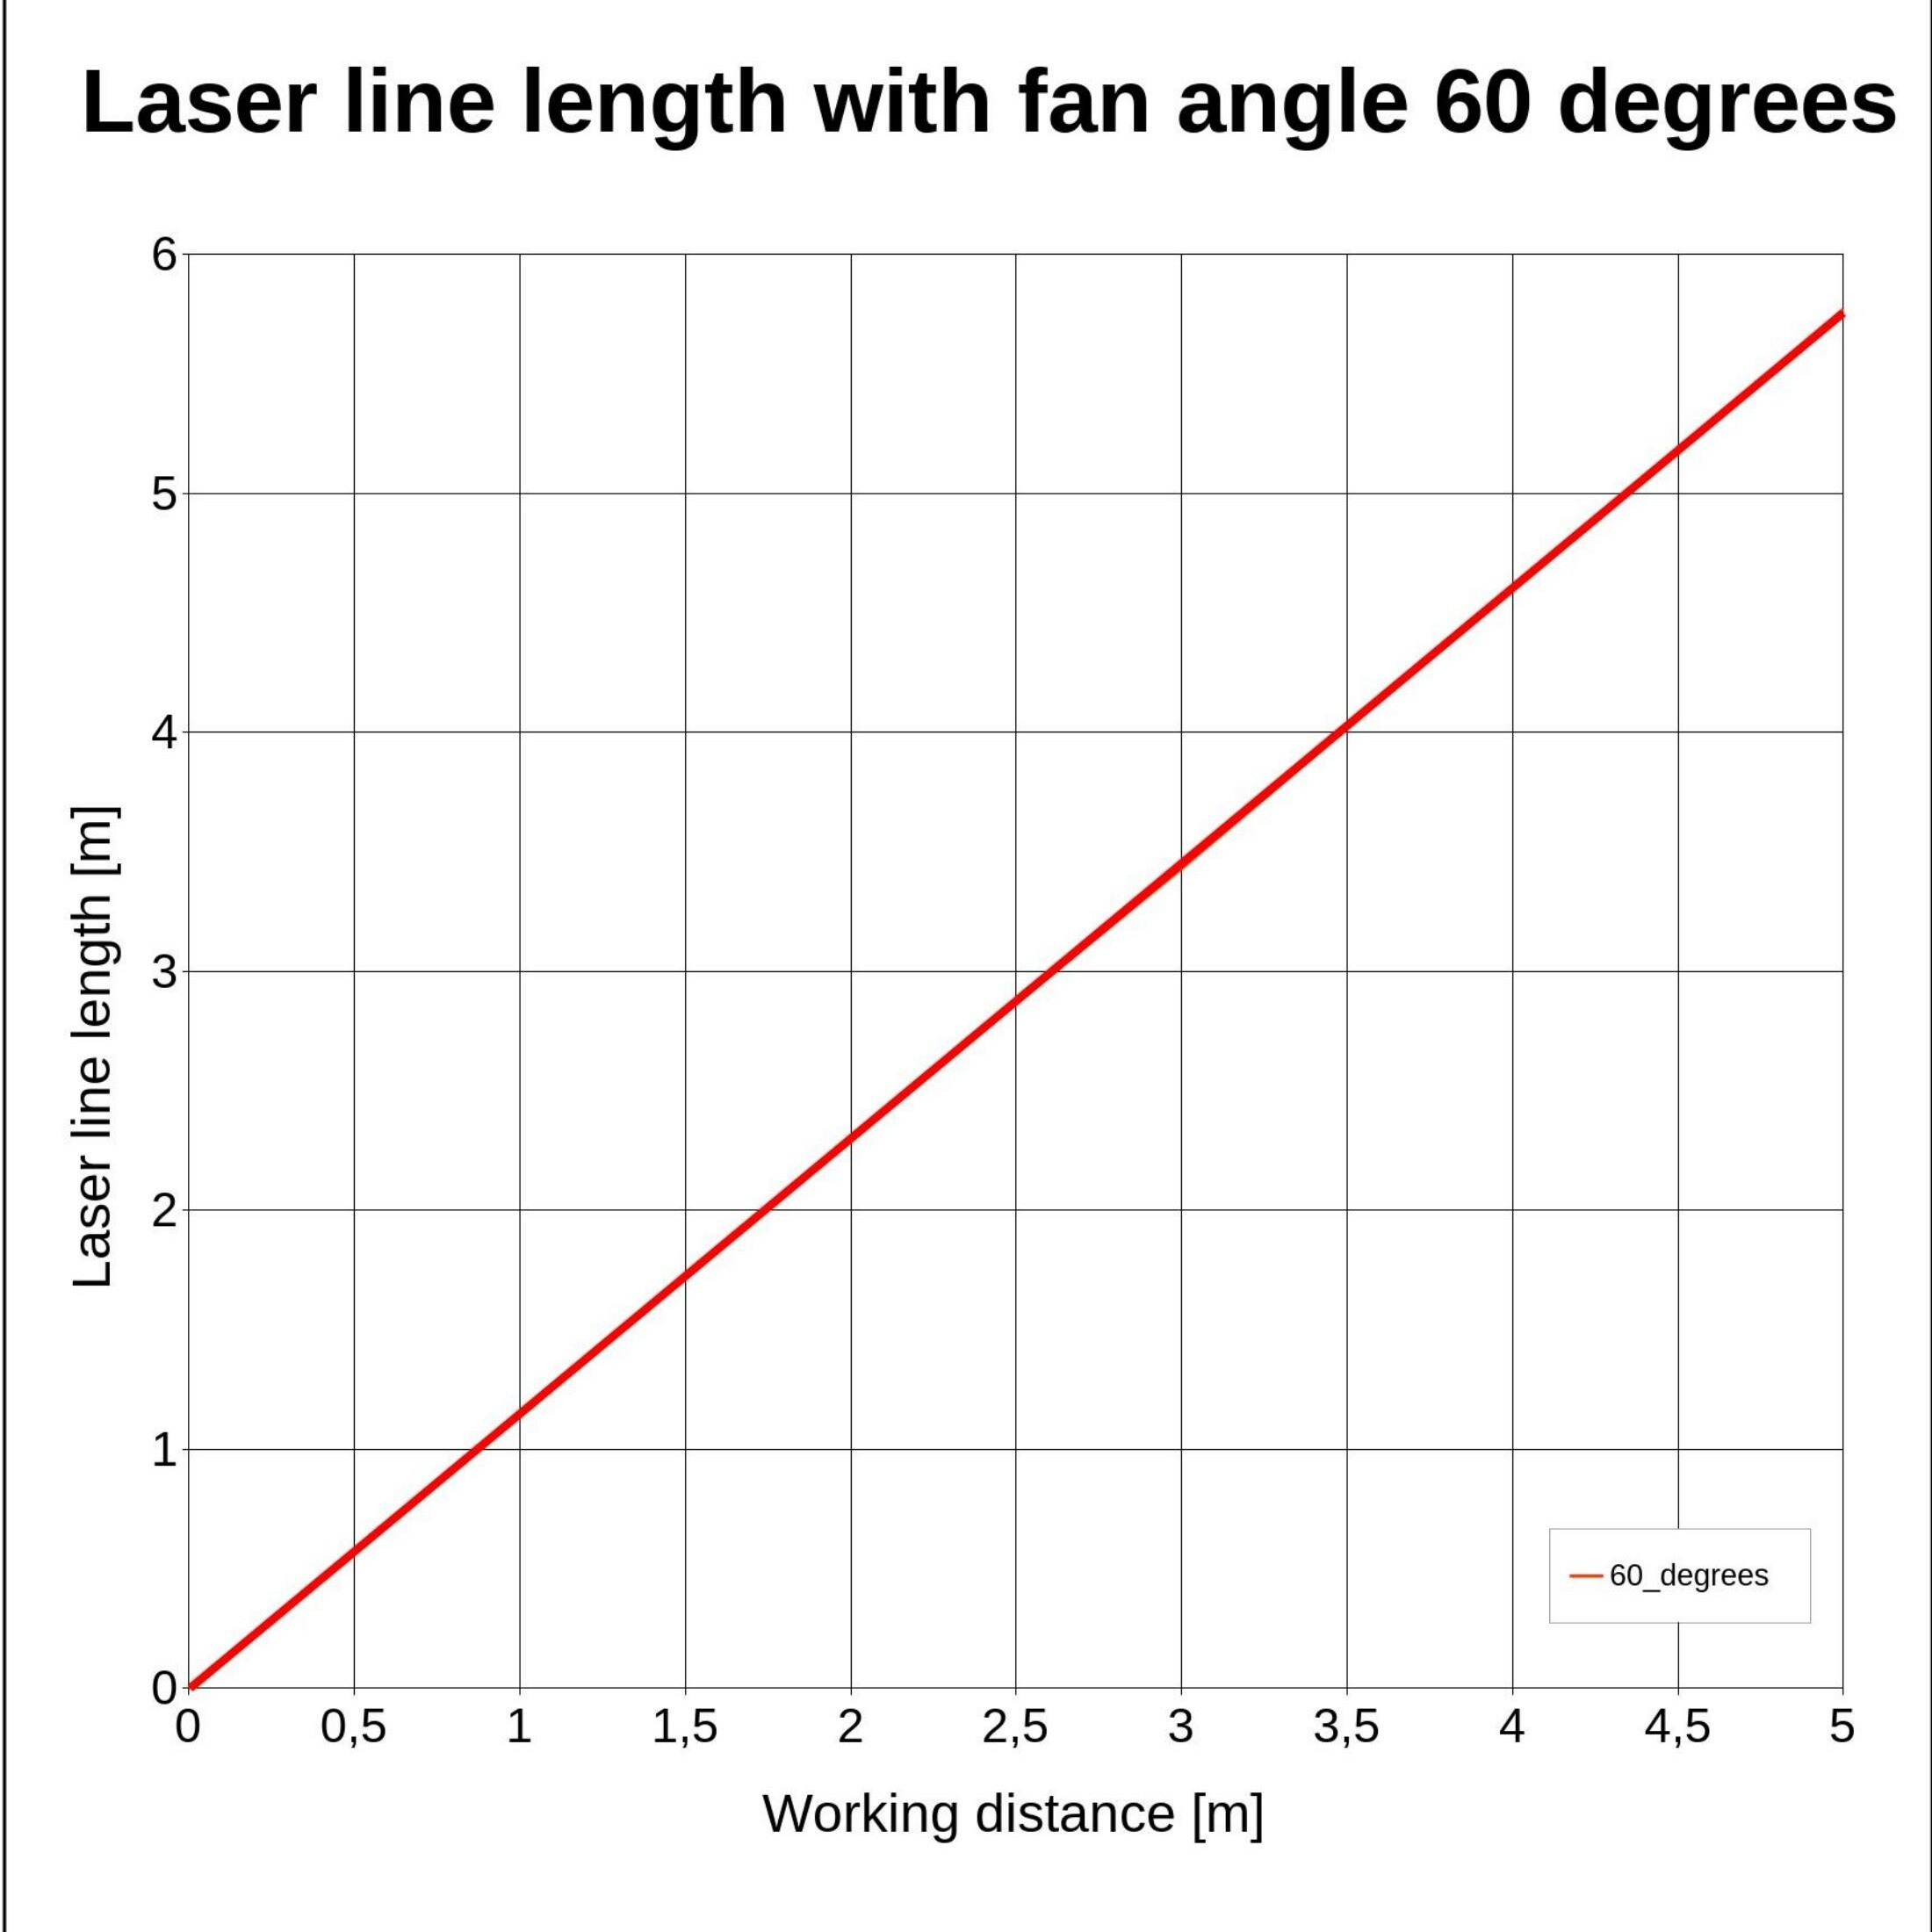 Laserfuchs Laser LFL635-5-6(9x20)60-F250